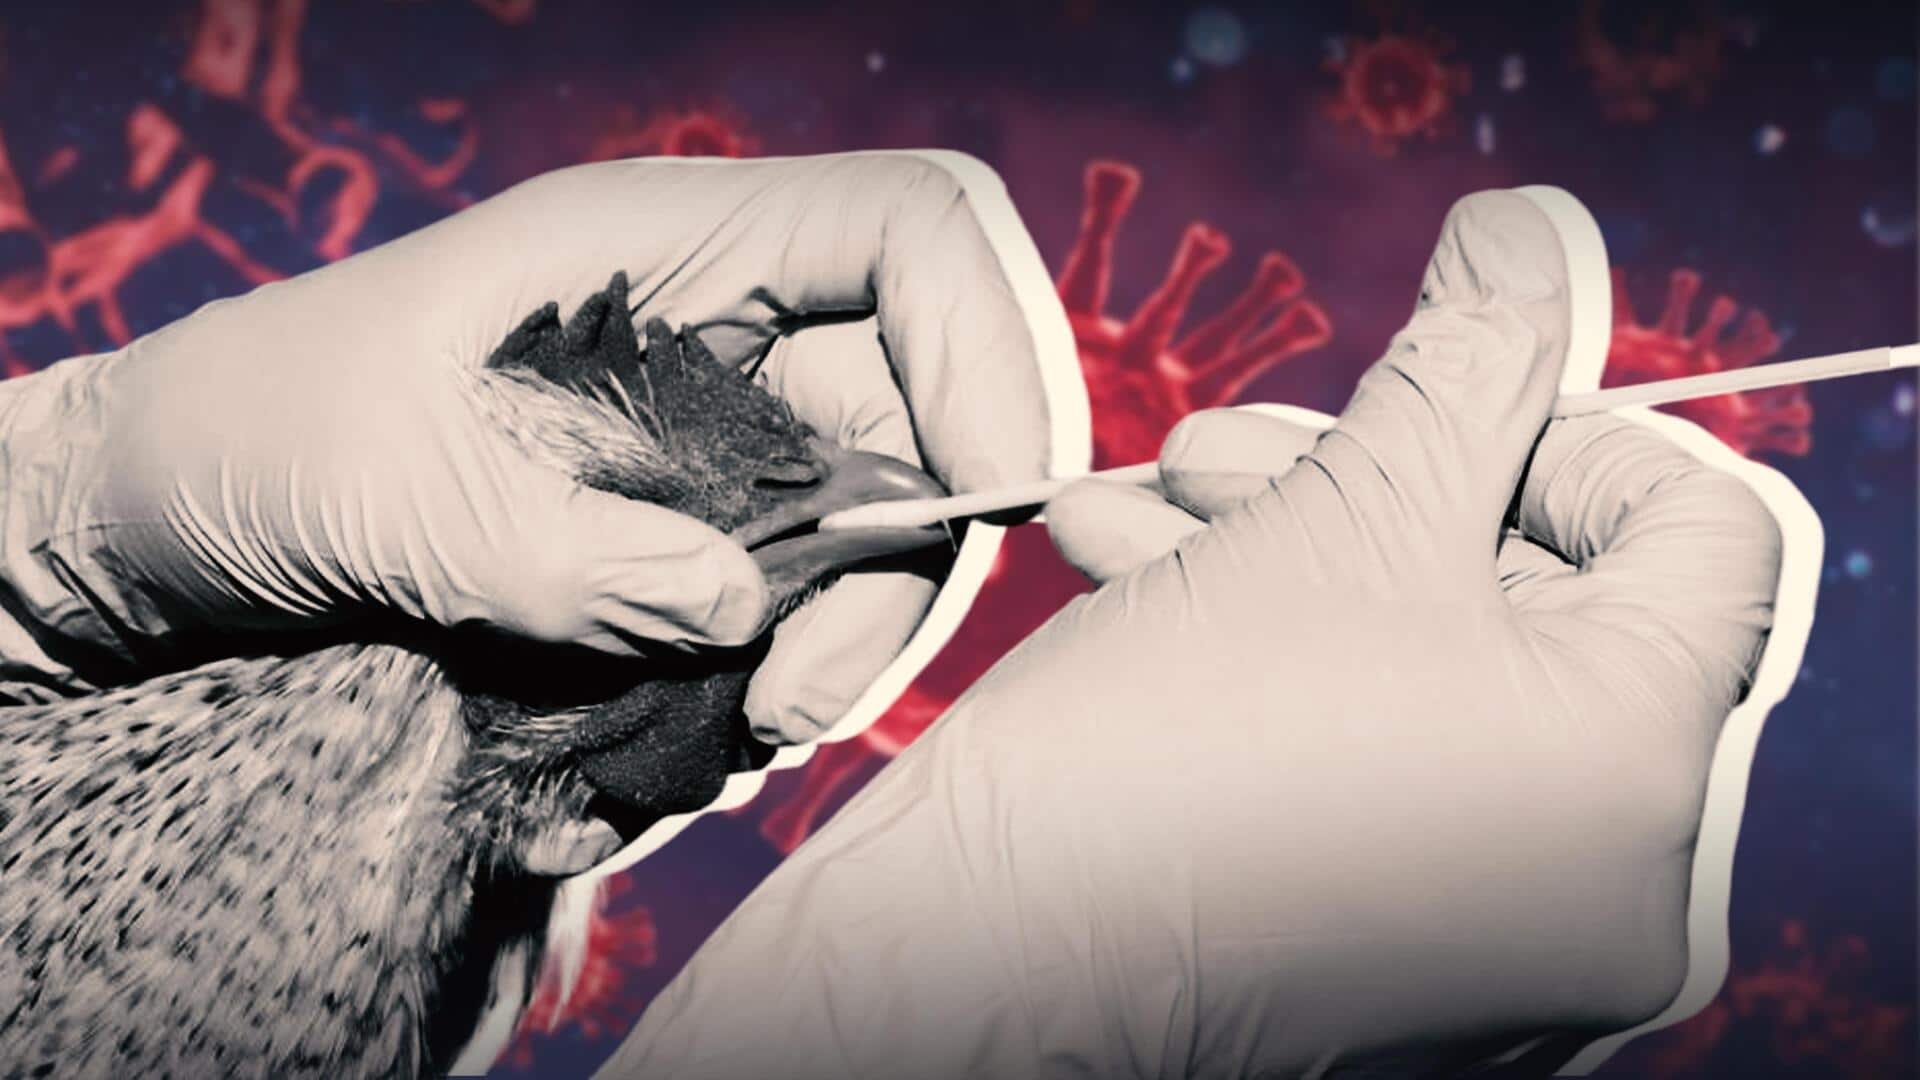 Bird flu outbreak in US raises food safety fears